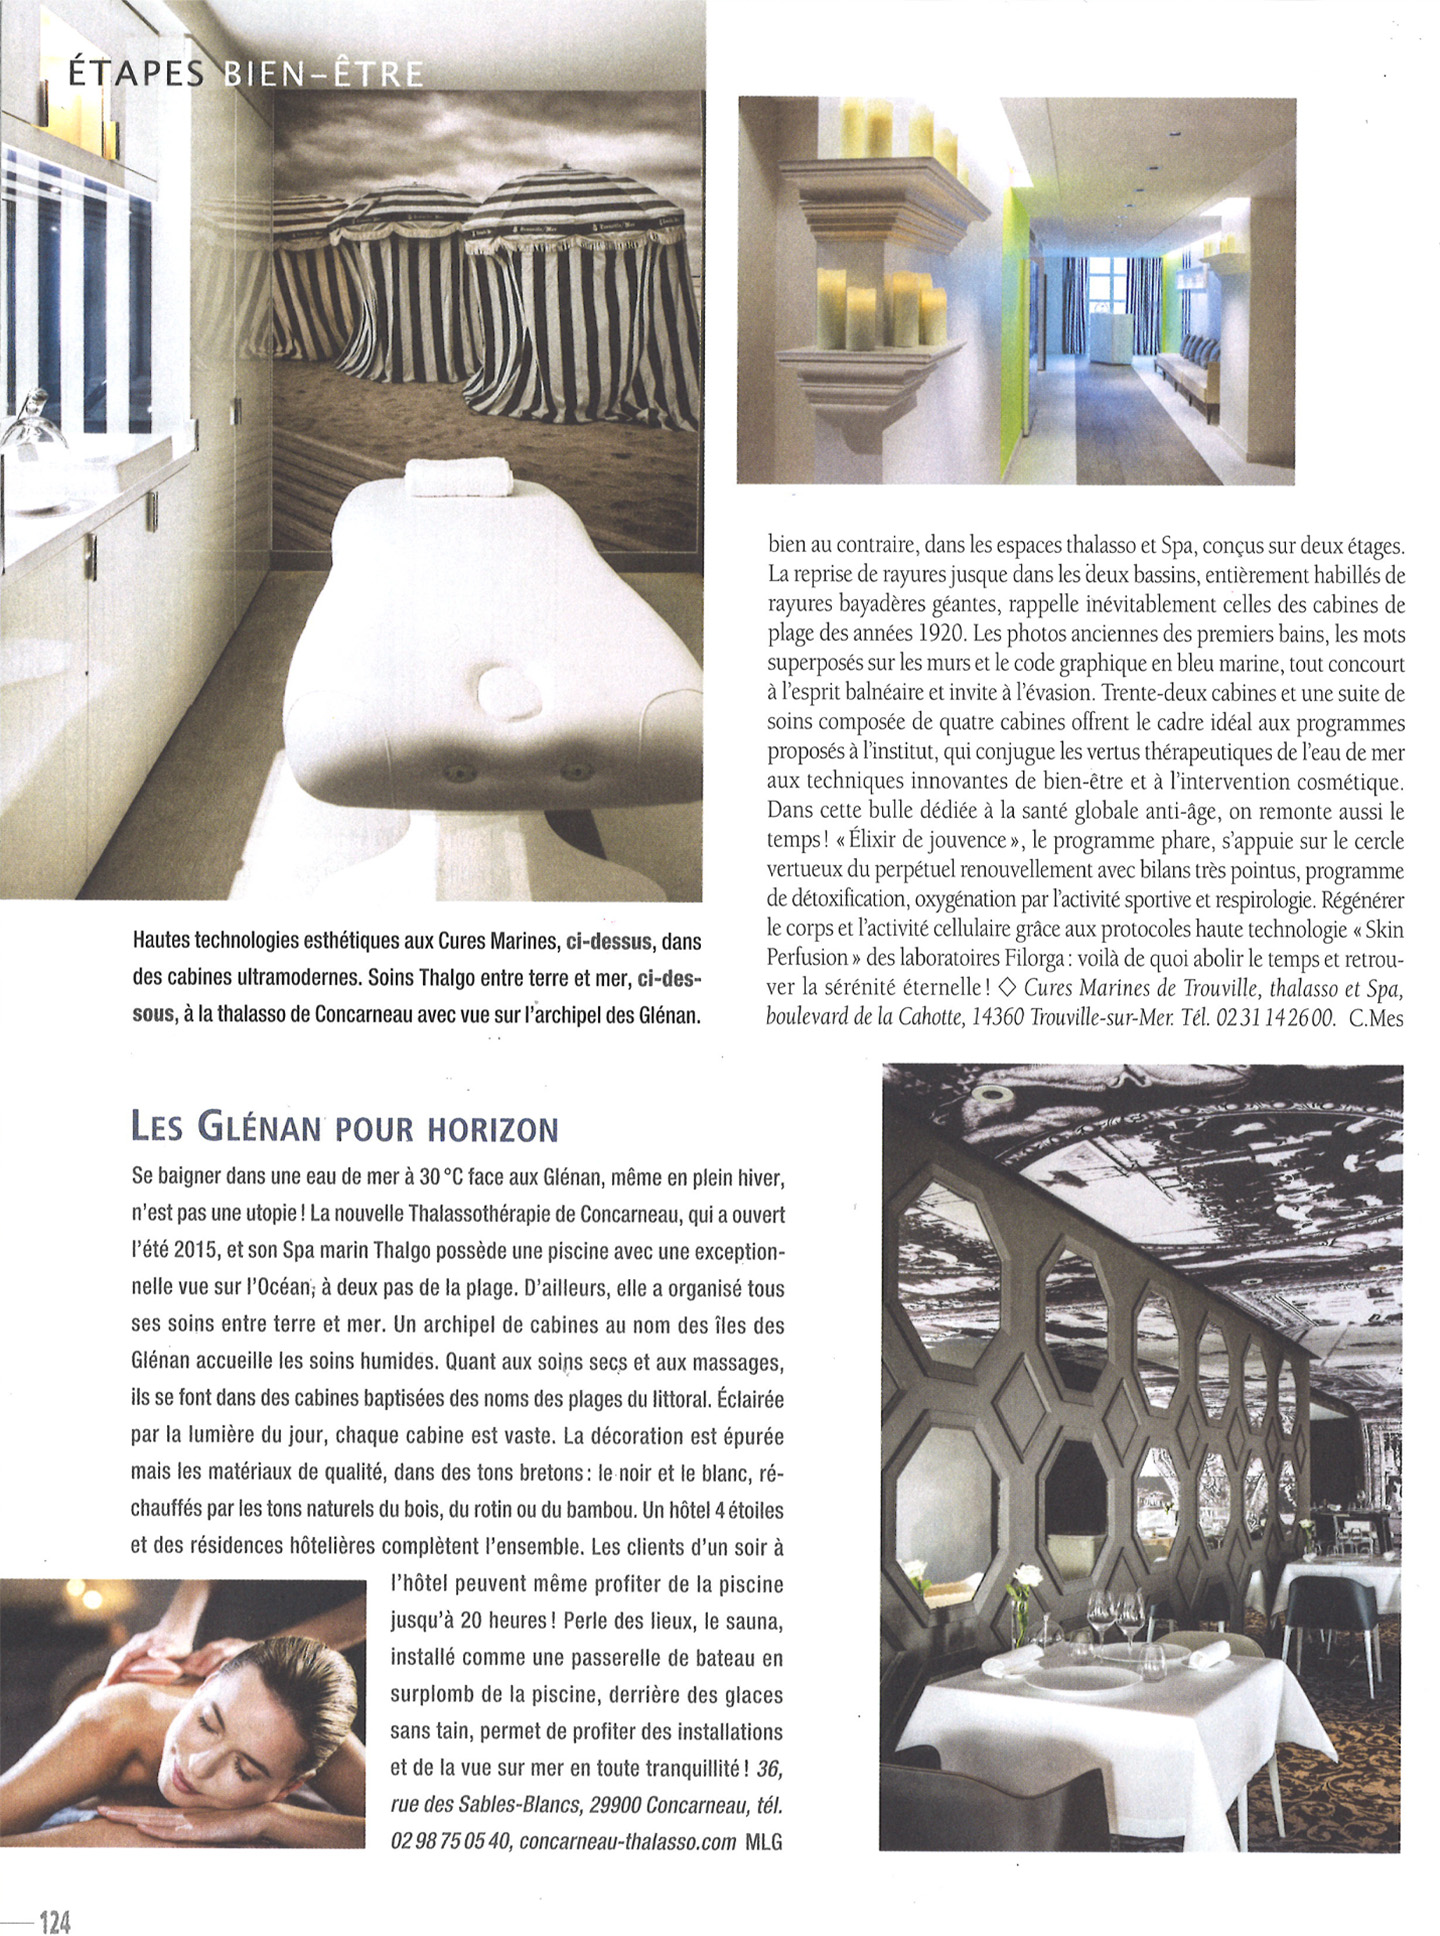 article sur les cures marines de trouville, hotel et spa 5 étoiles réalisé par le studio d'architecture d'intérieur jean-philippe nuel, dans le magazine maisons cote ouest